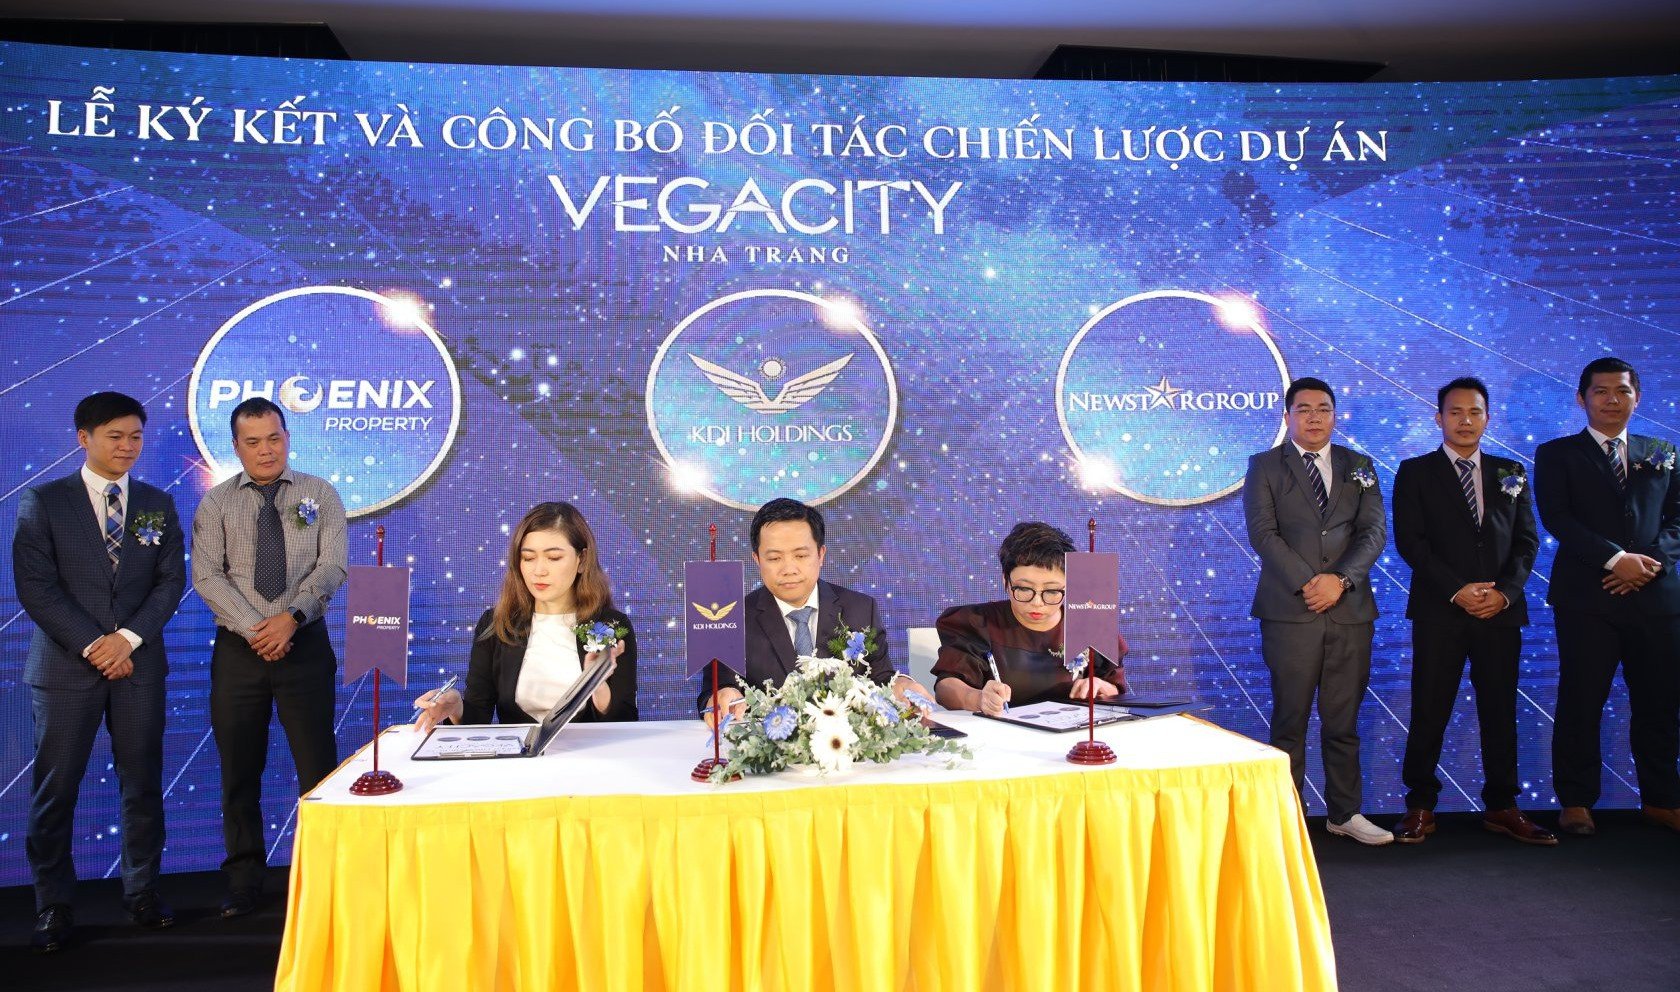 Đại lý bán Vega City Nha Trang